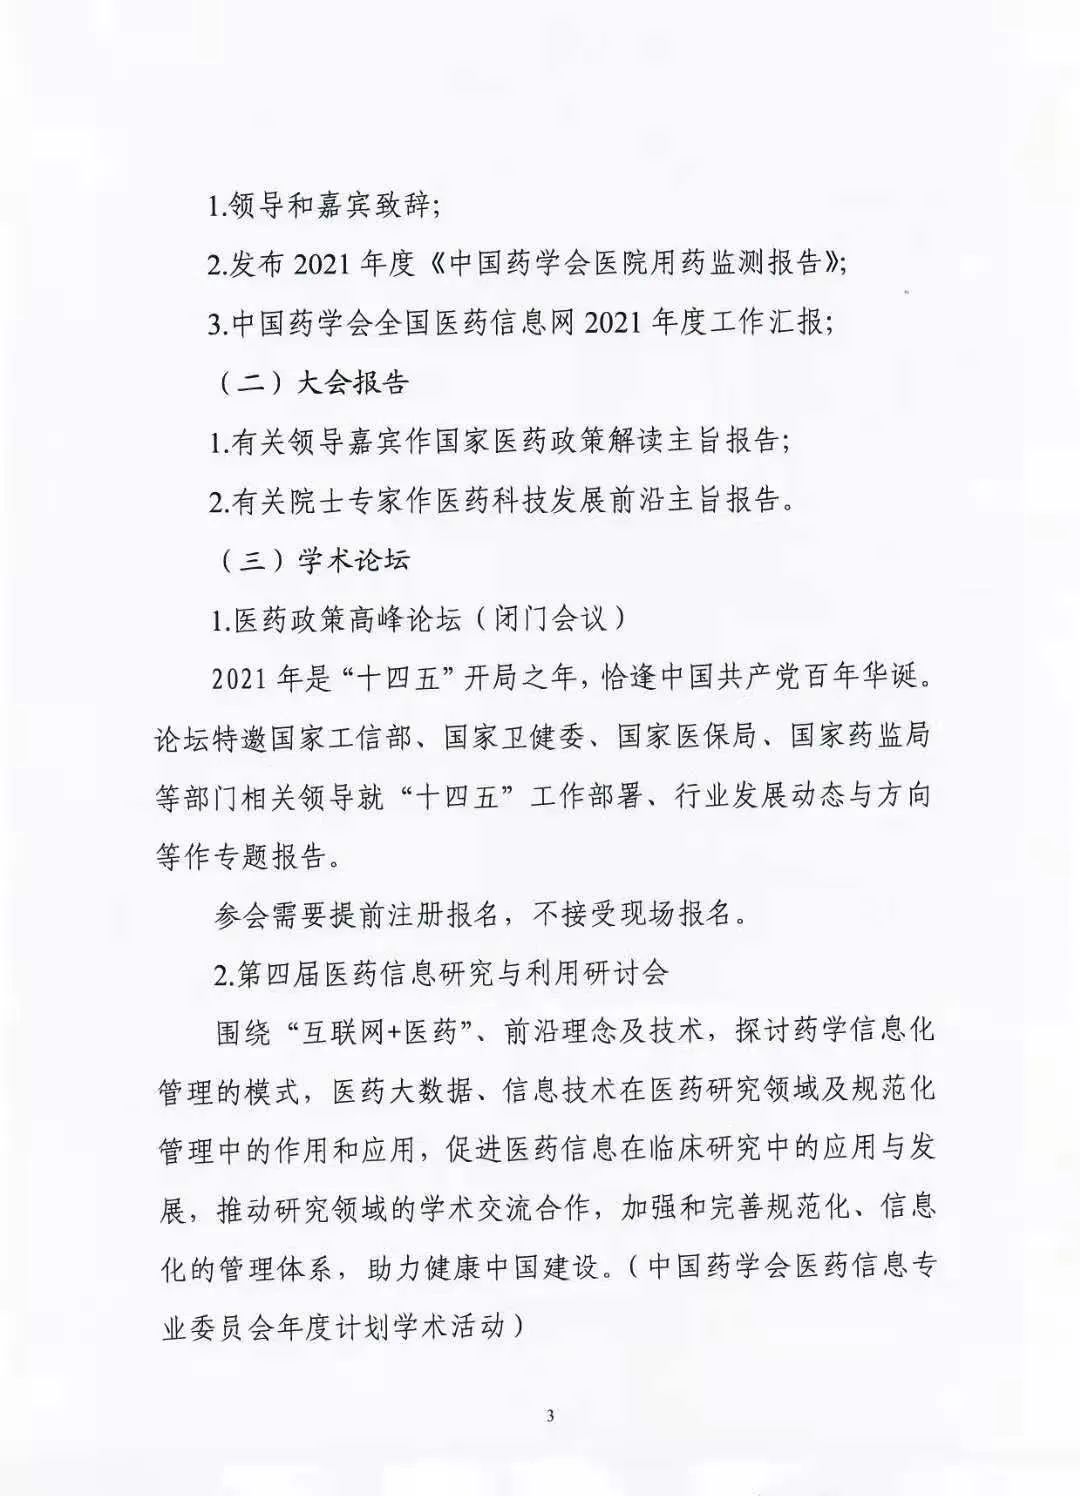 关于举办中国药学会第二十一届中国药师周的通知（第一轮）(图3)